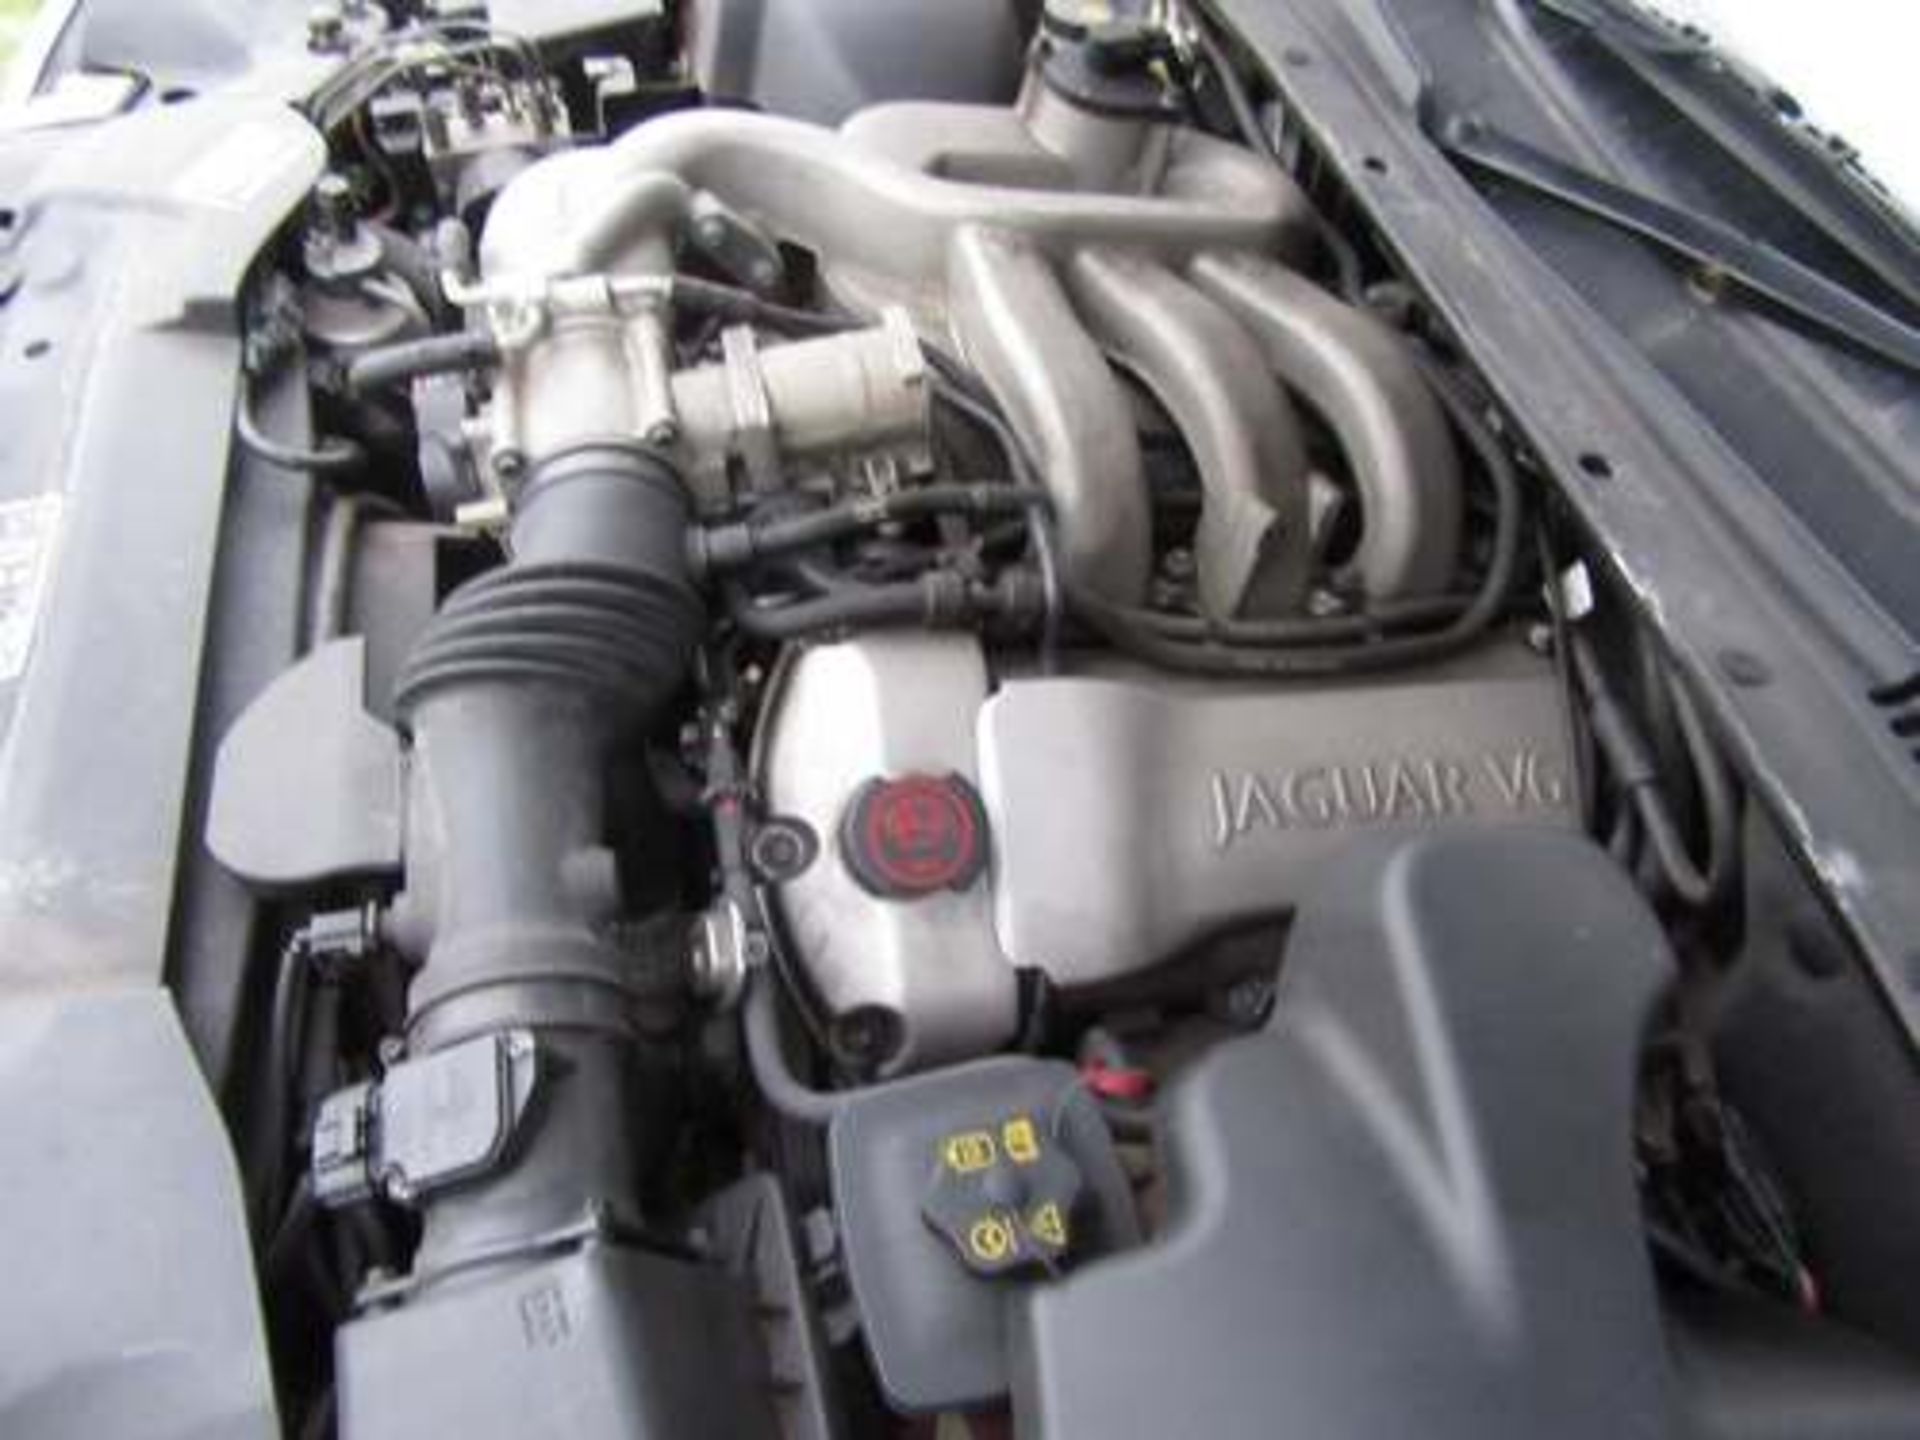 JAGUAR S-TYPE V6 AUTO - 2967cc - Image 8 of 8